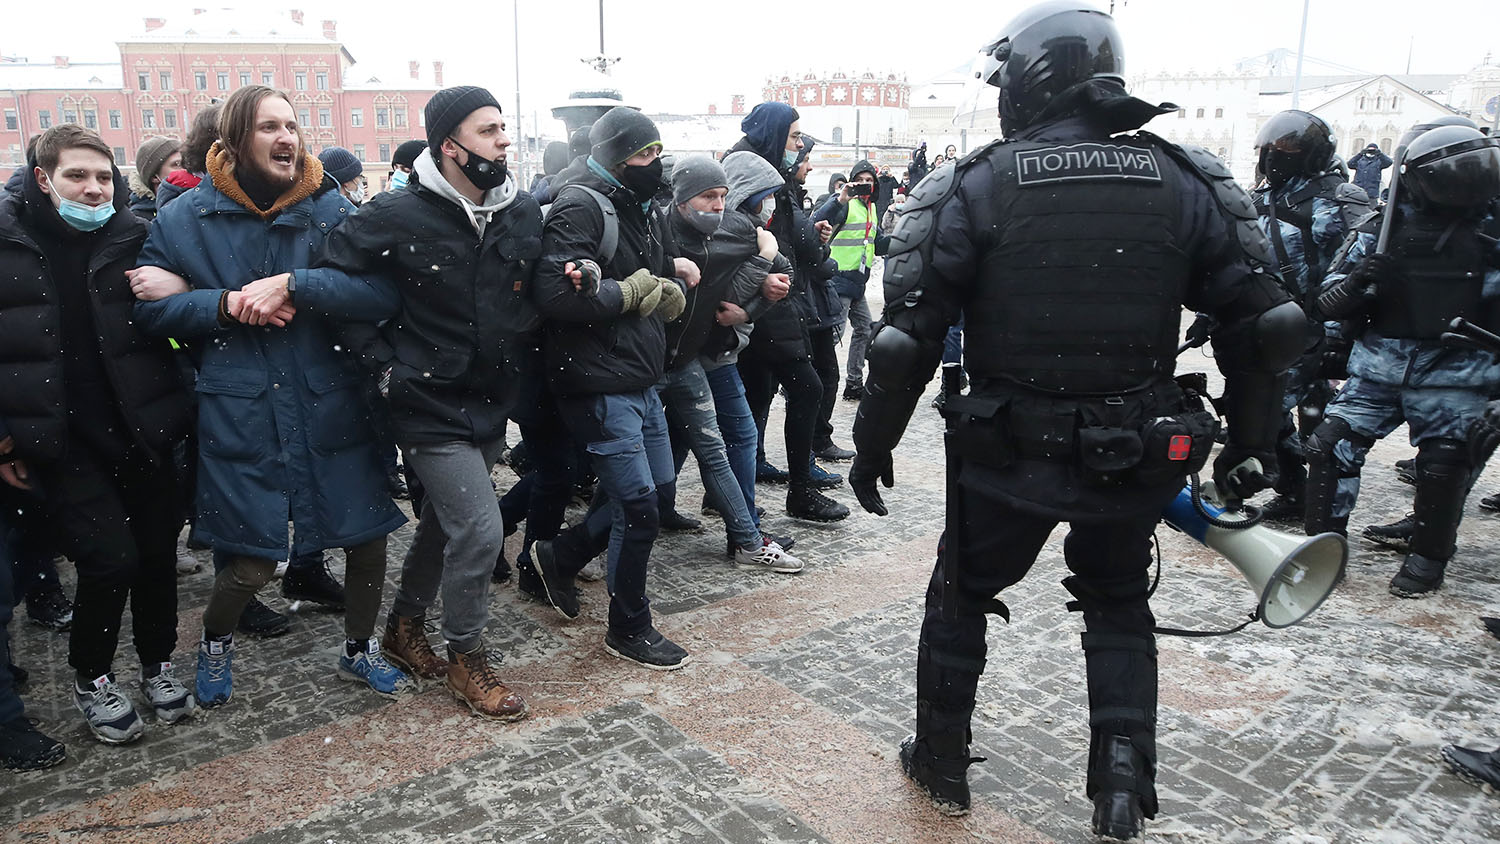 Столкновения с полицией в Москве. Столкновение митингующих с полицией. Дебилы на митинге. Москва стычки